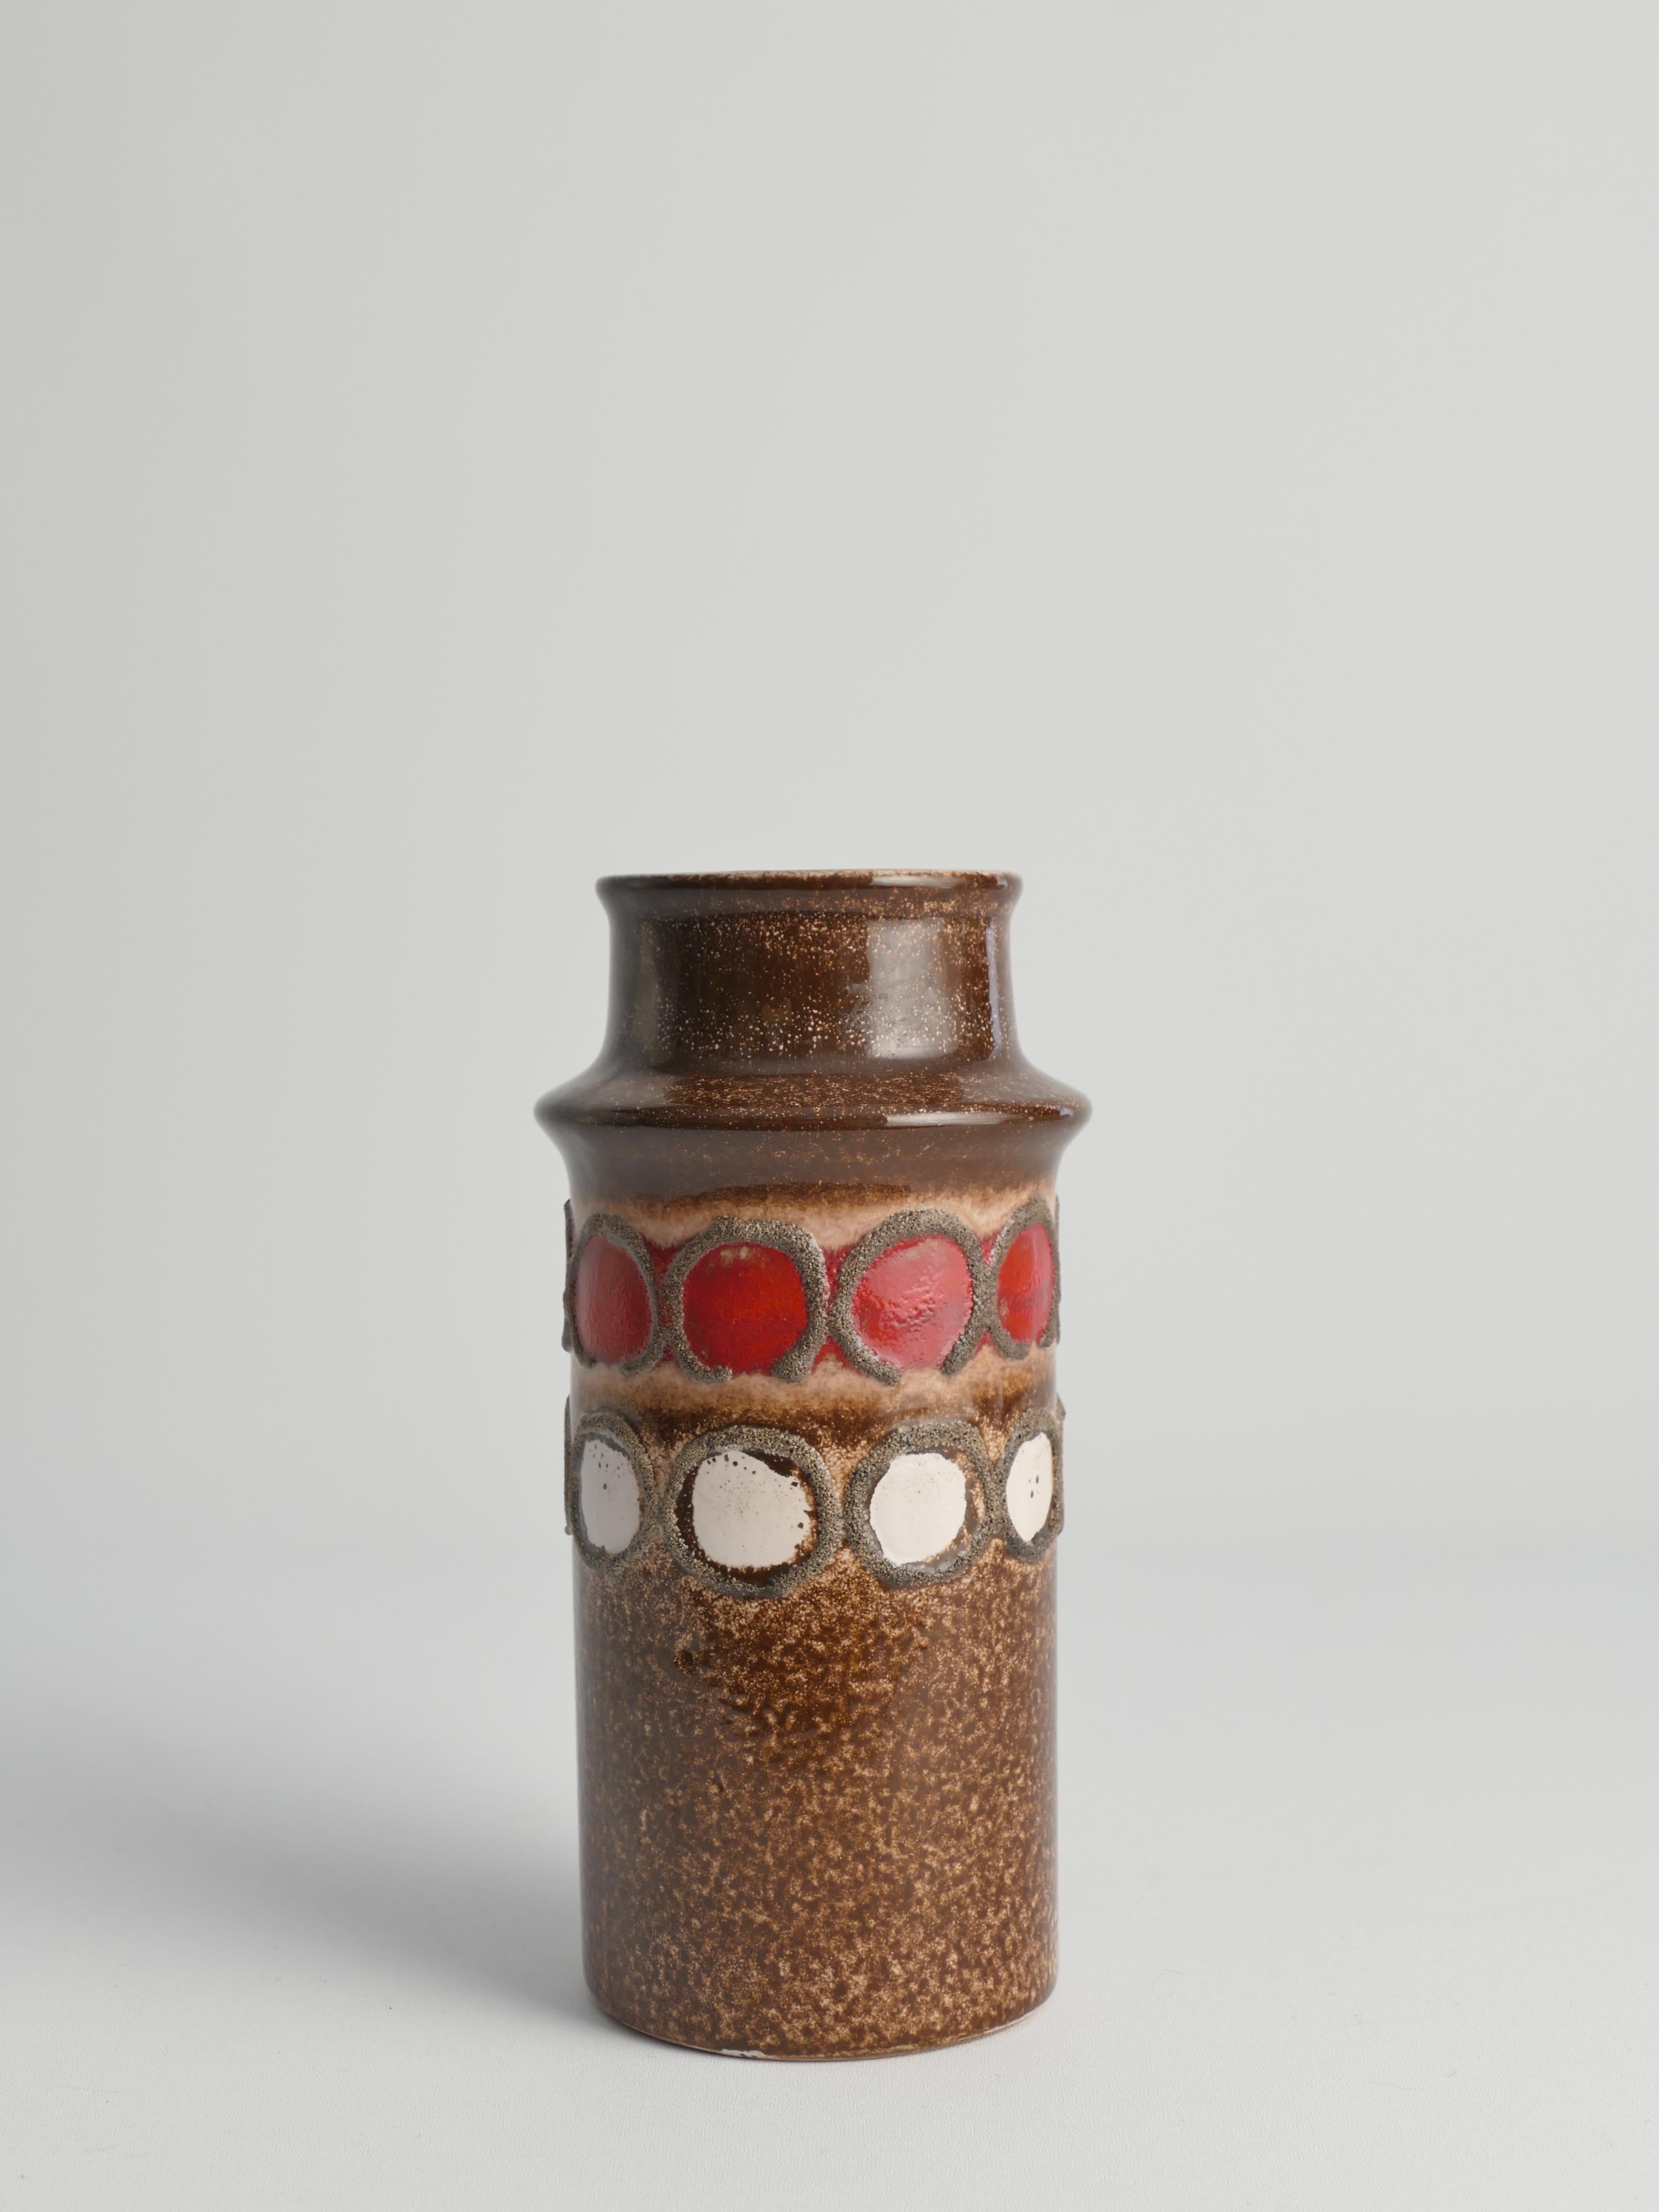 Dieses coole braune Keramikgehäuse des VEB Haldensleben aus der Mitte des Jahrhunderts wurde in den 1960er Jahren in der DDR (Deutsche Demokratische Republik) hergestellt. Diese Vase, eine Kreation des VEB Haldensleben, ist ein Paradebeispiel für